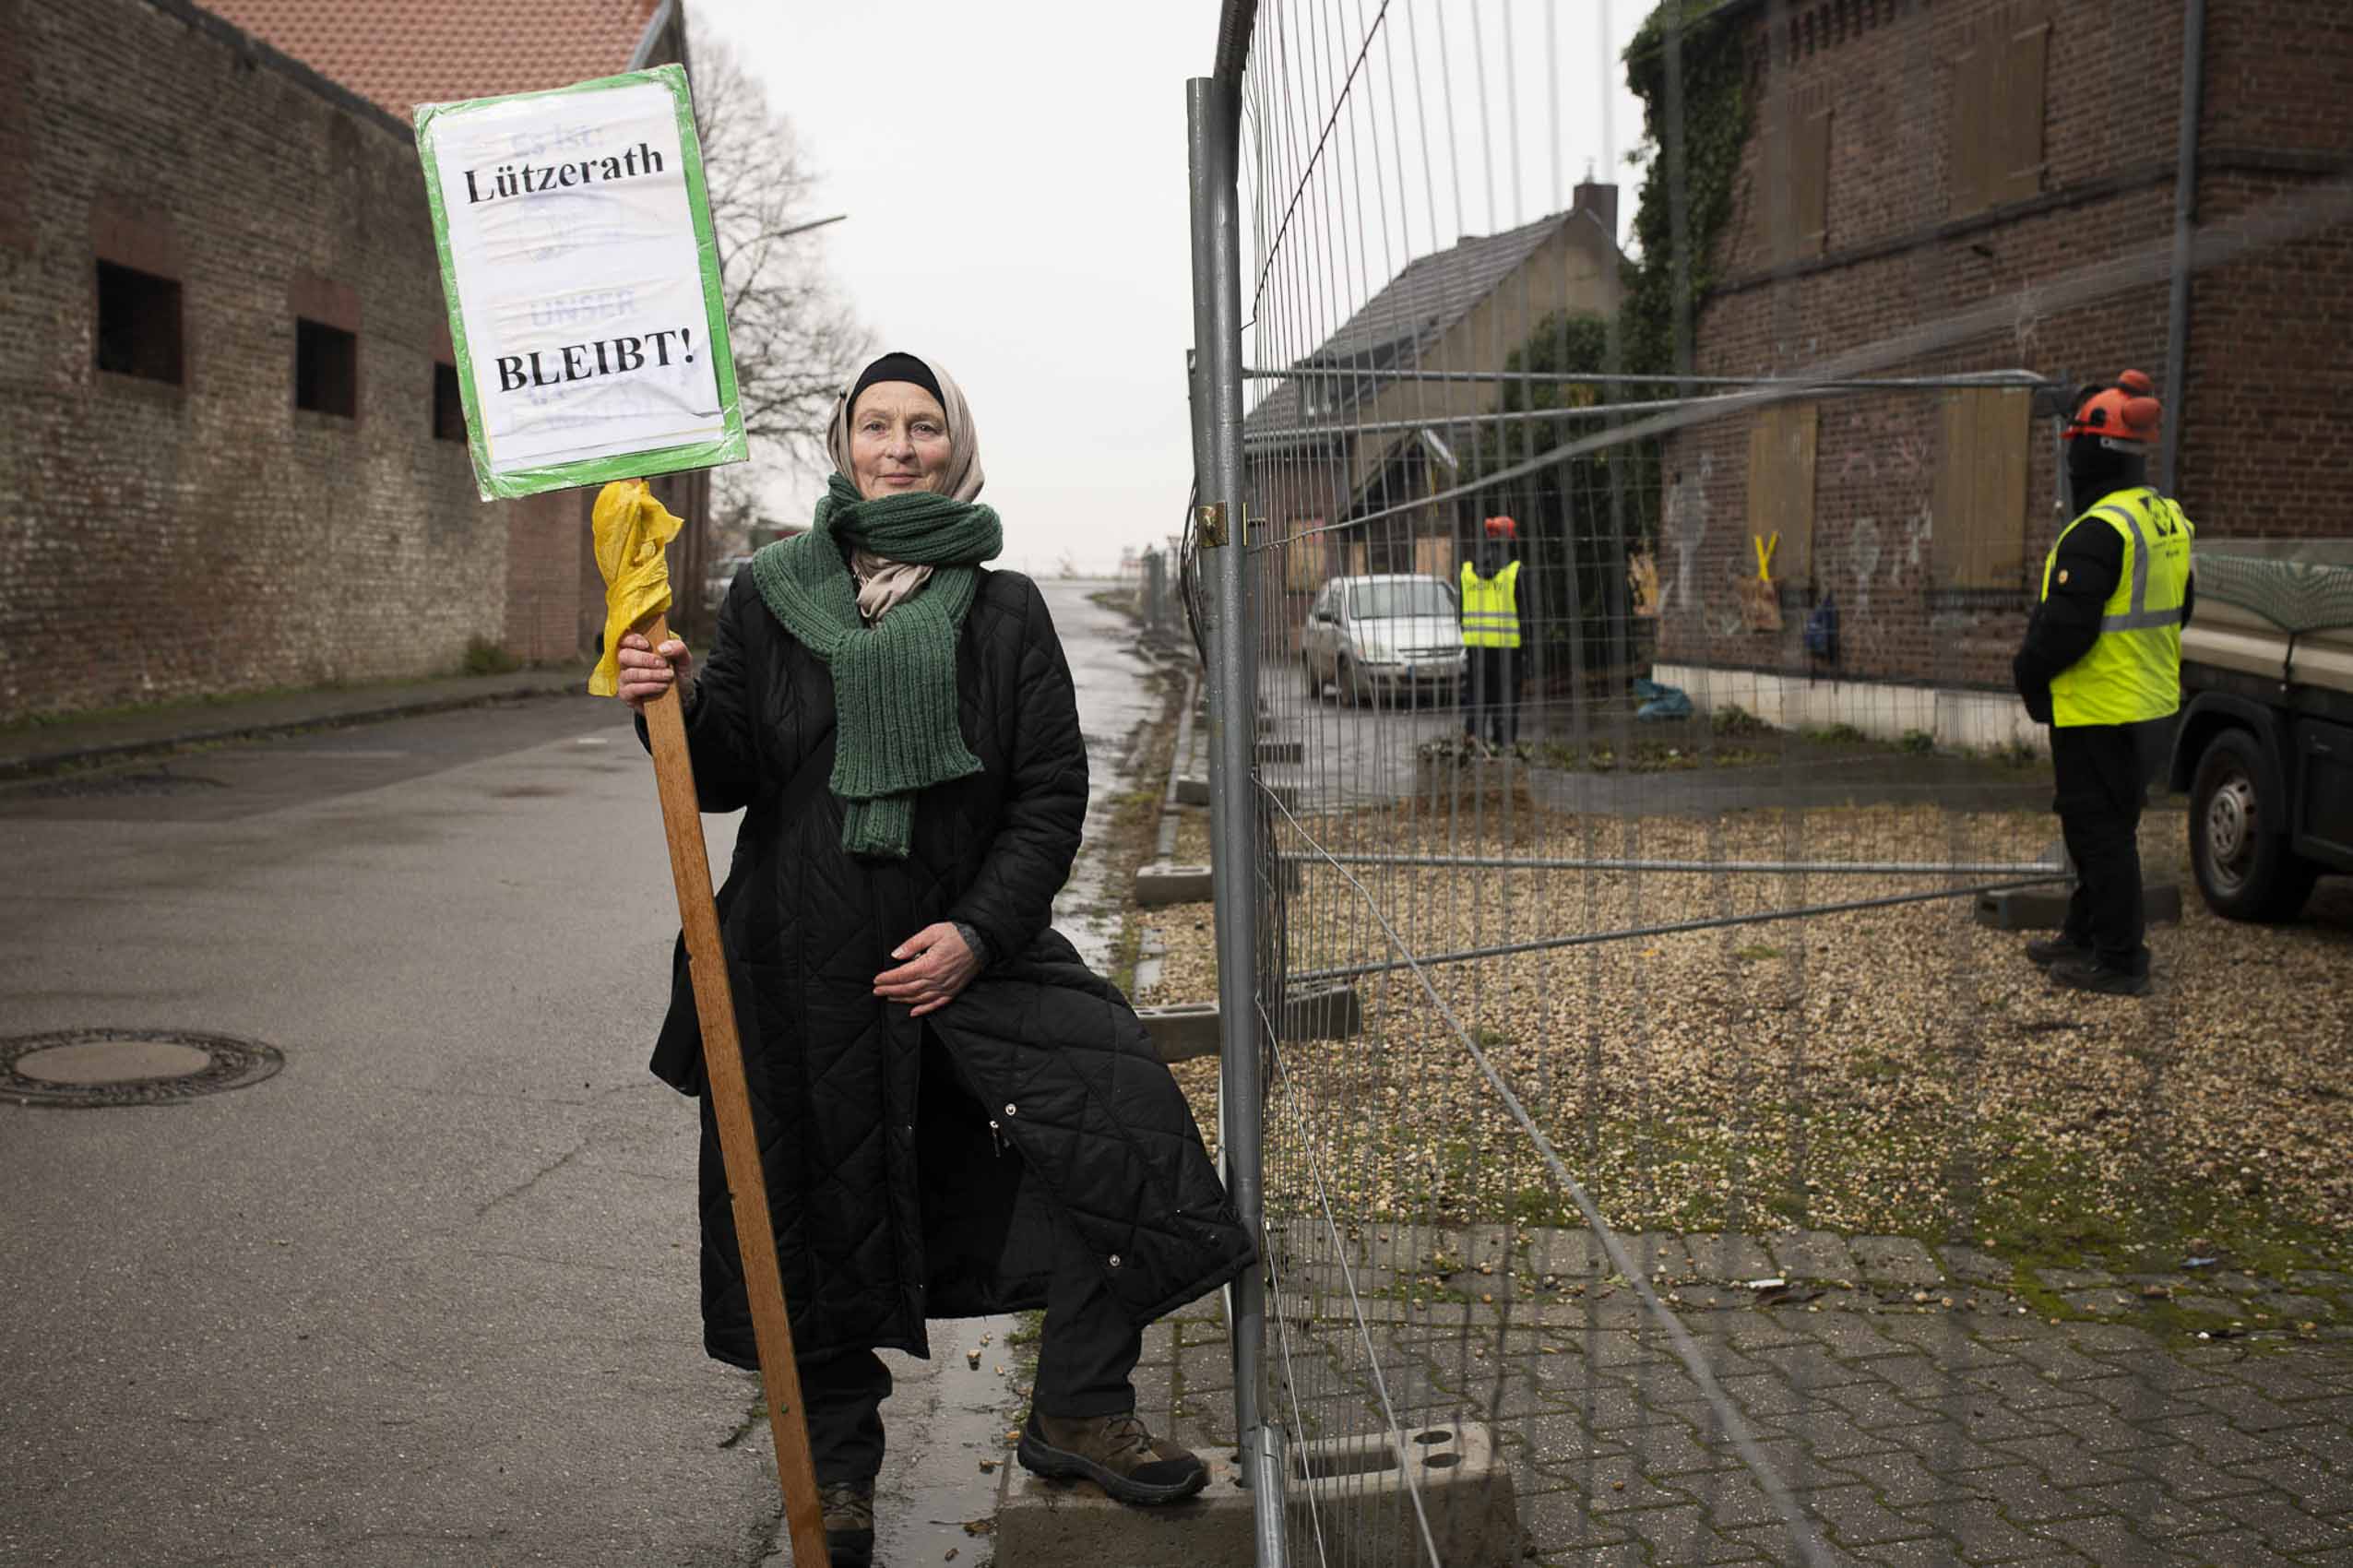 Portrait in Lützerath. Portrait der Klimaaktivist*innen vor Ort